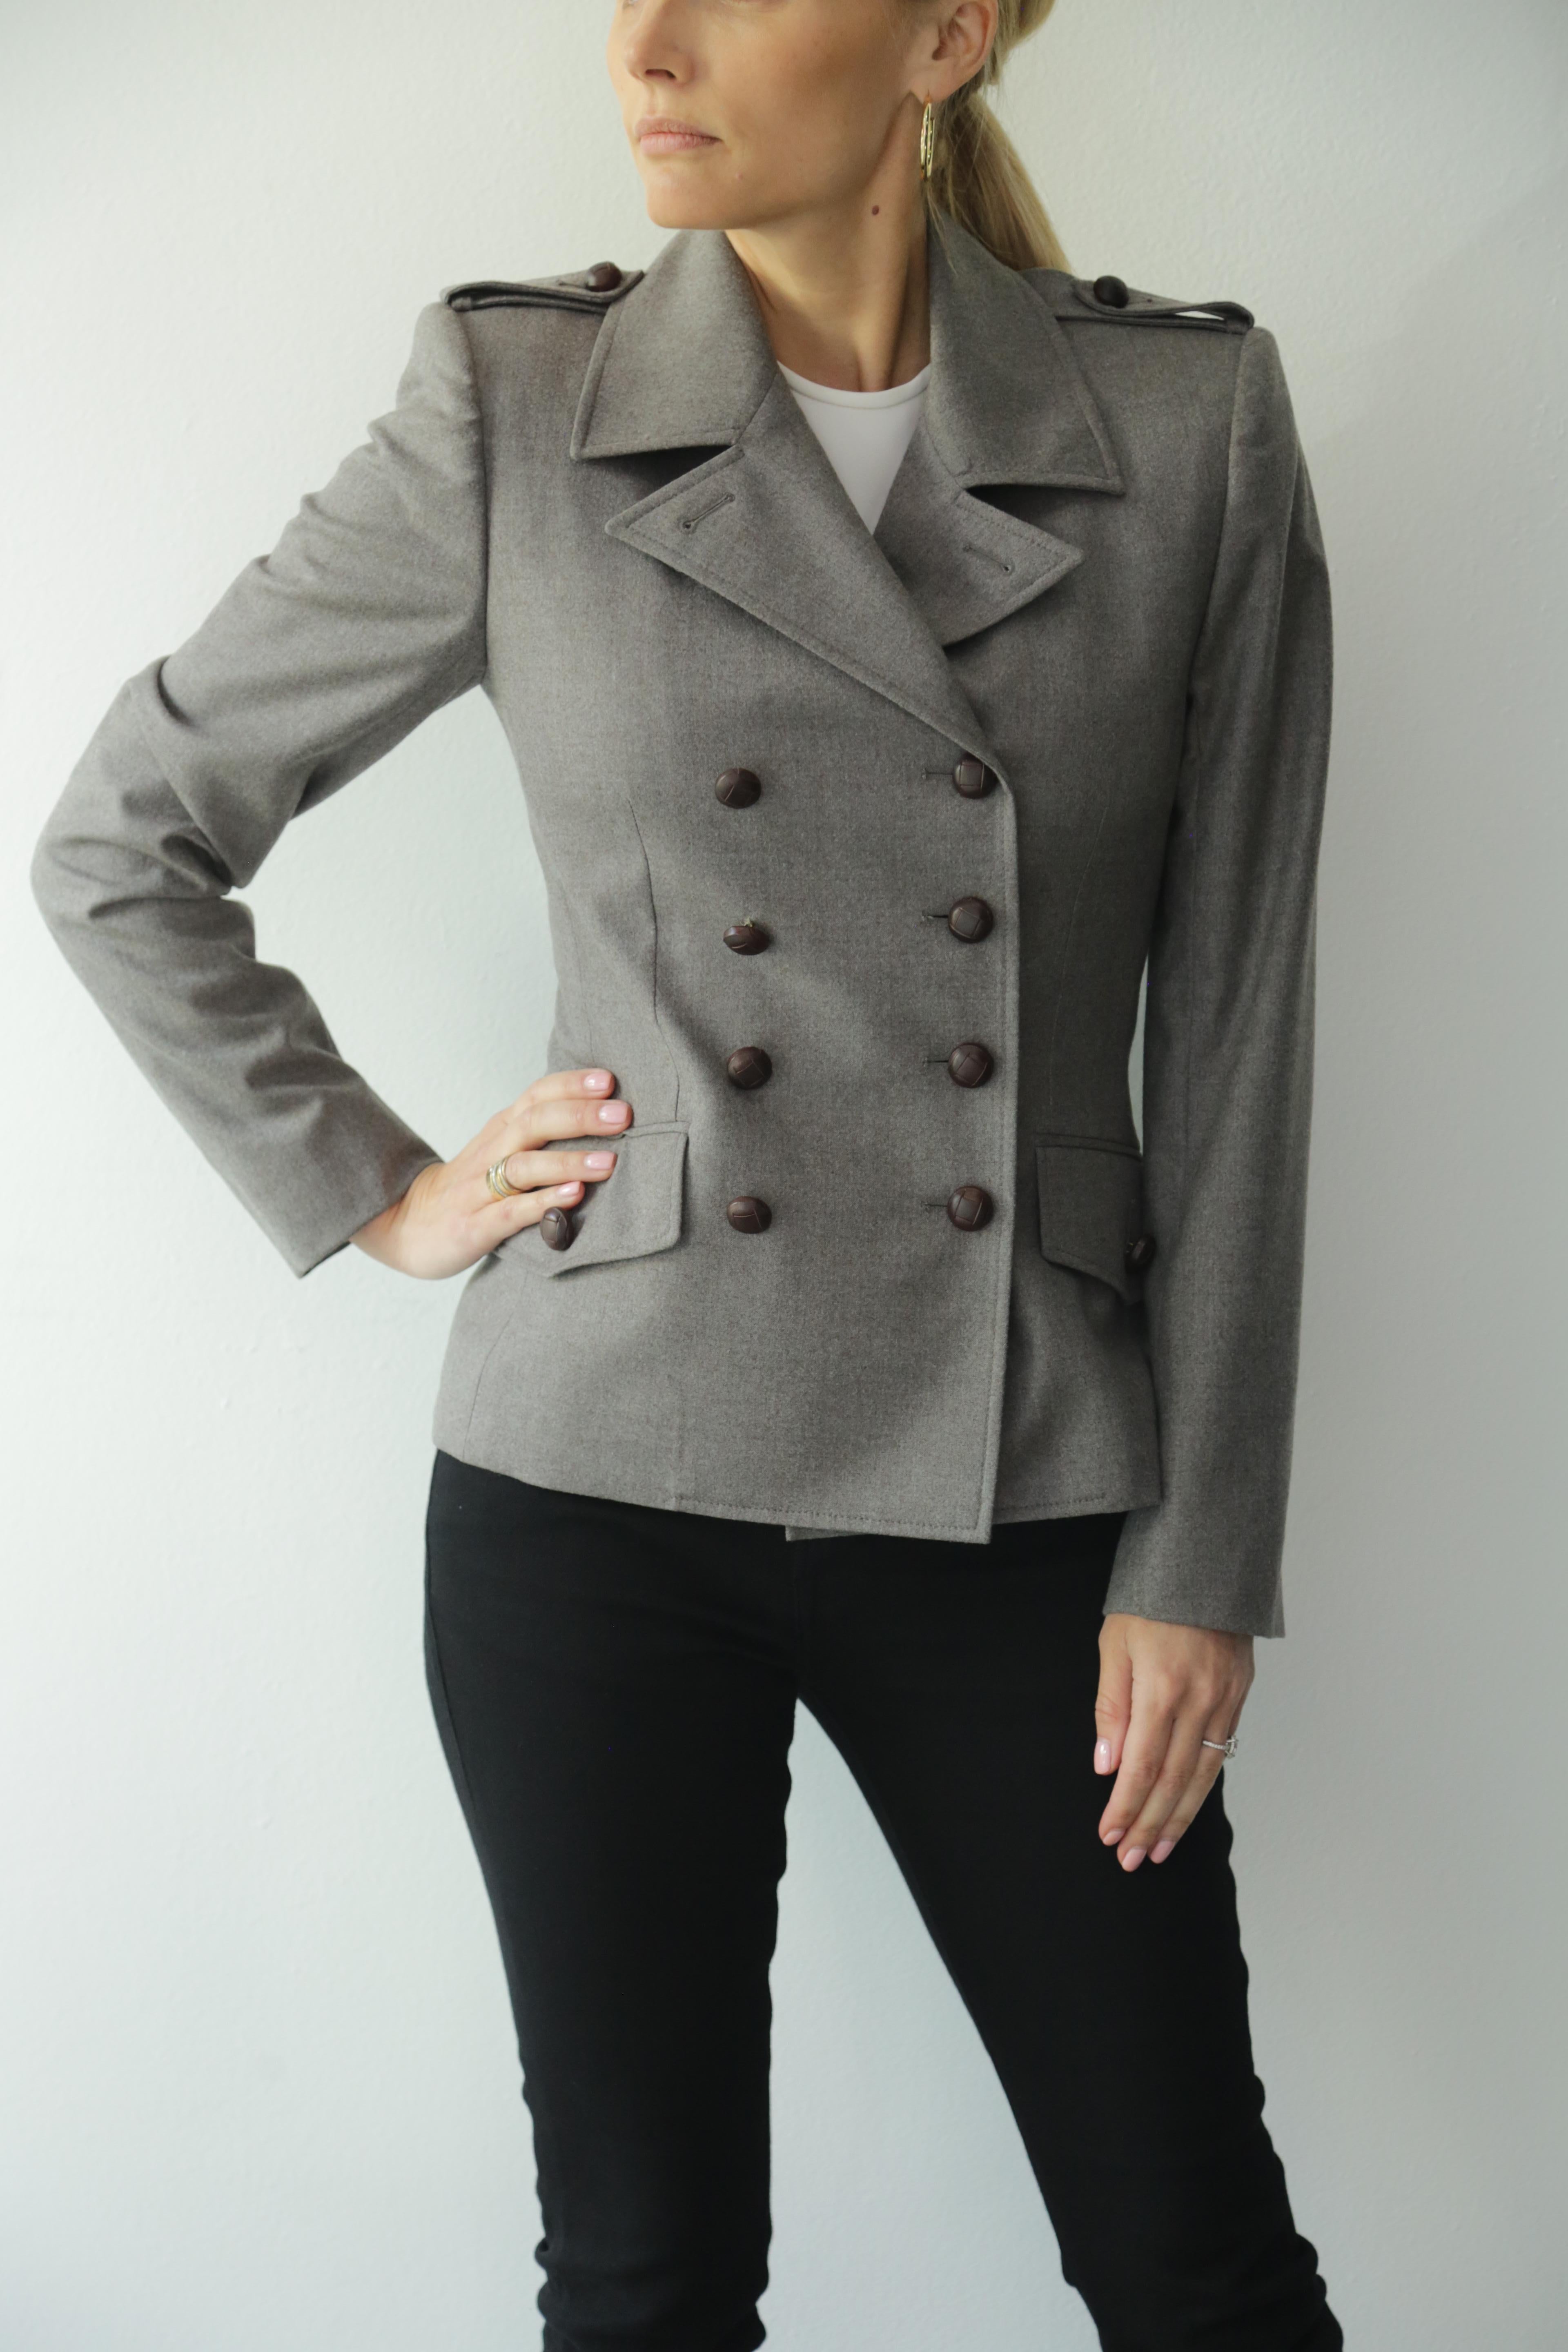 Yves Saint Laurent Vintage, graue Blazerjacke mit braunen Lederknöpfen. 90er Jahre Jahrzehnt. 
Die Jacke kann mit hochgeknöpftem Kragen oder mit offenem Kragen und umgeschlagen wie ein Blazer getragen werden.
Toller Zustand. 
97% Schurwolle, 3%